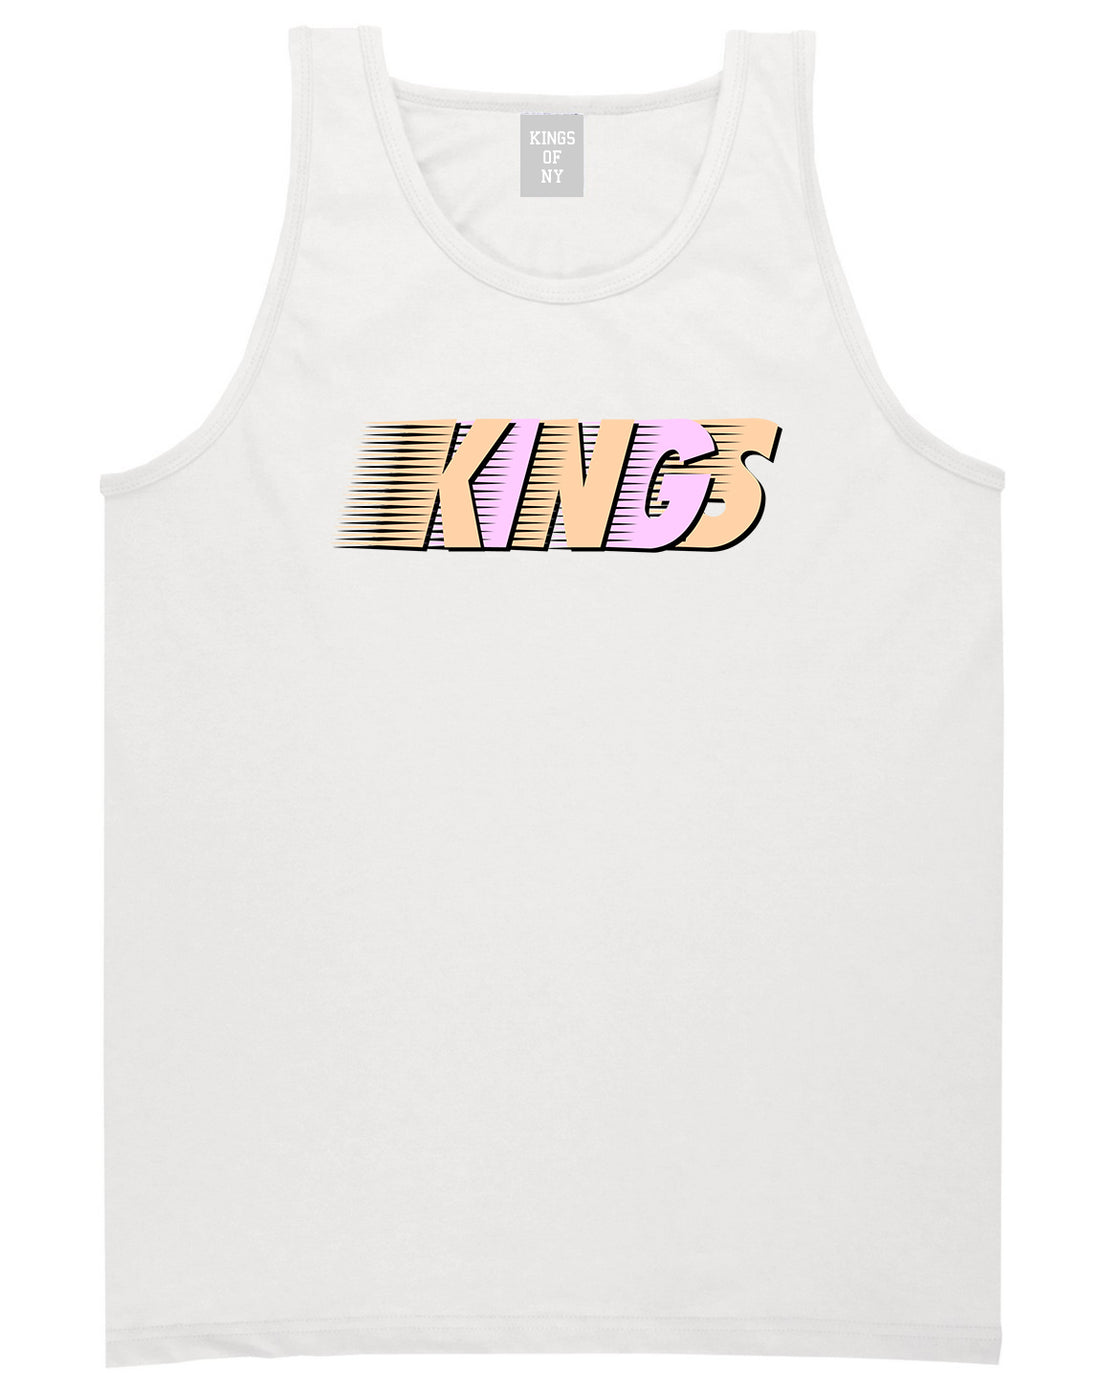 KINGS Easter T-Shirt in White